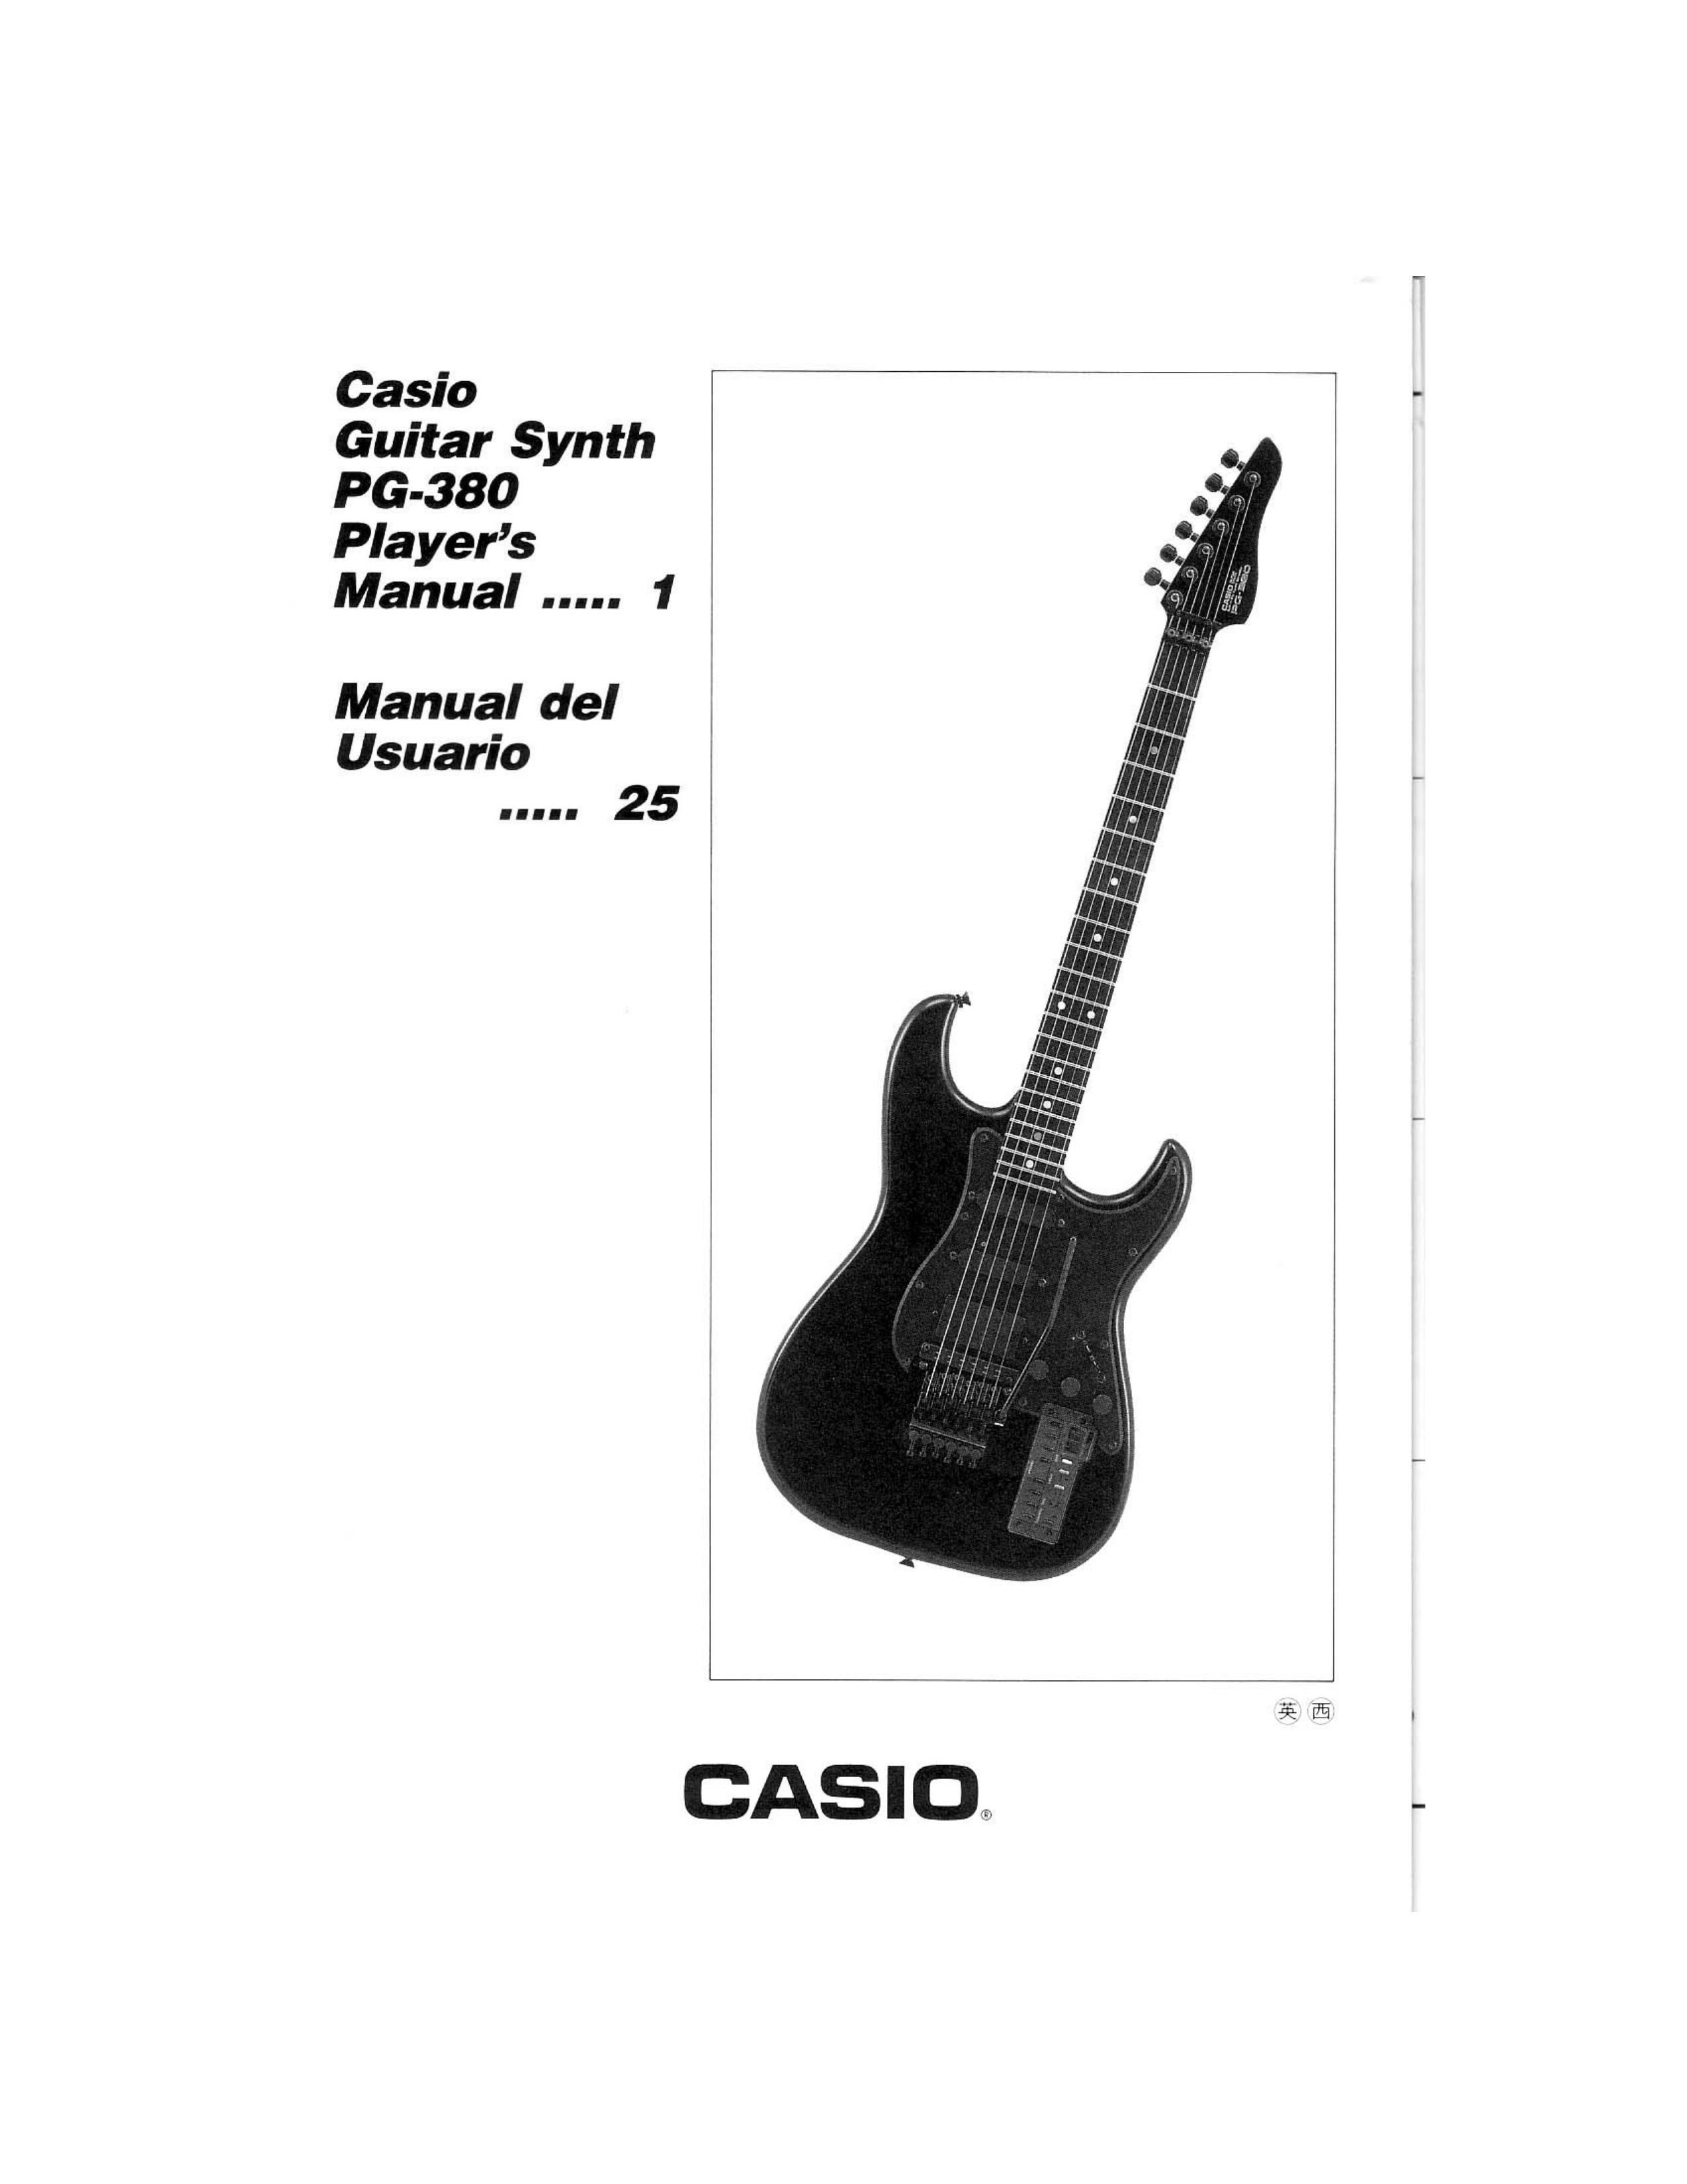 Casio PG-380 Guitar User Manual